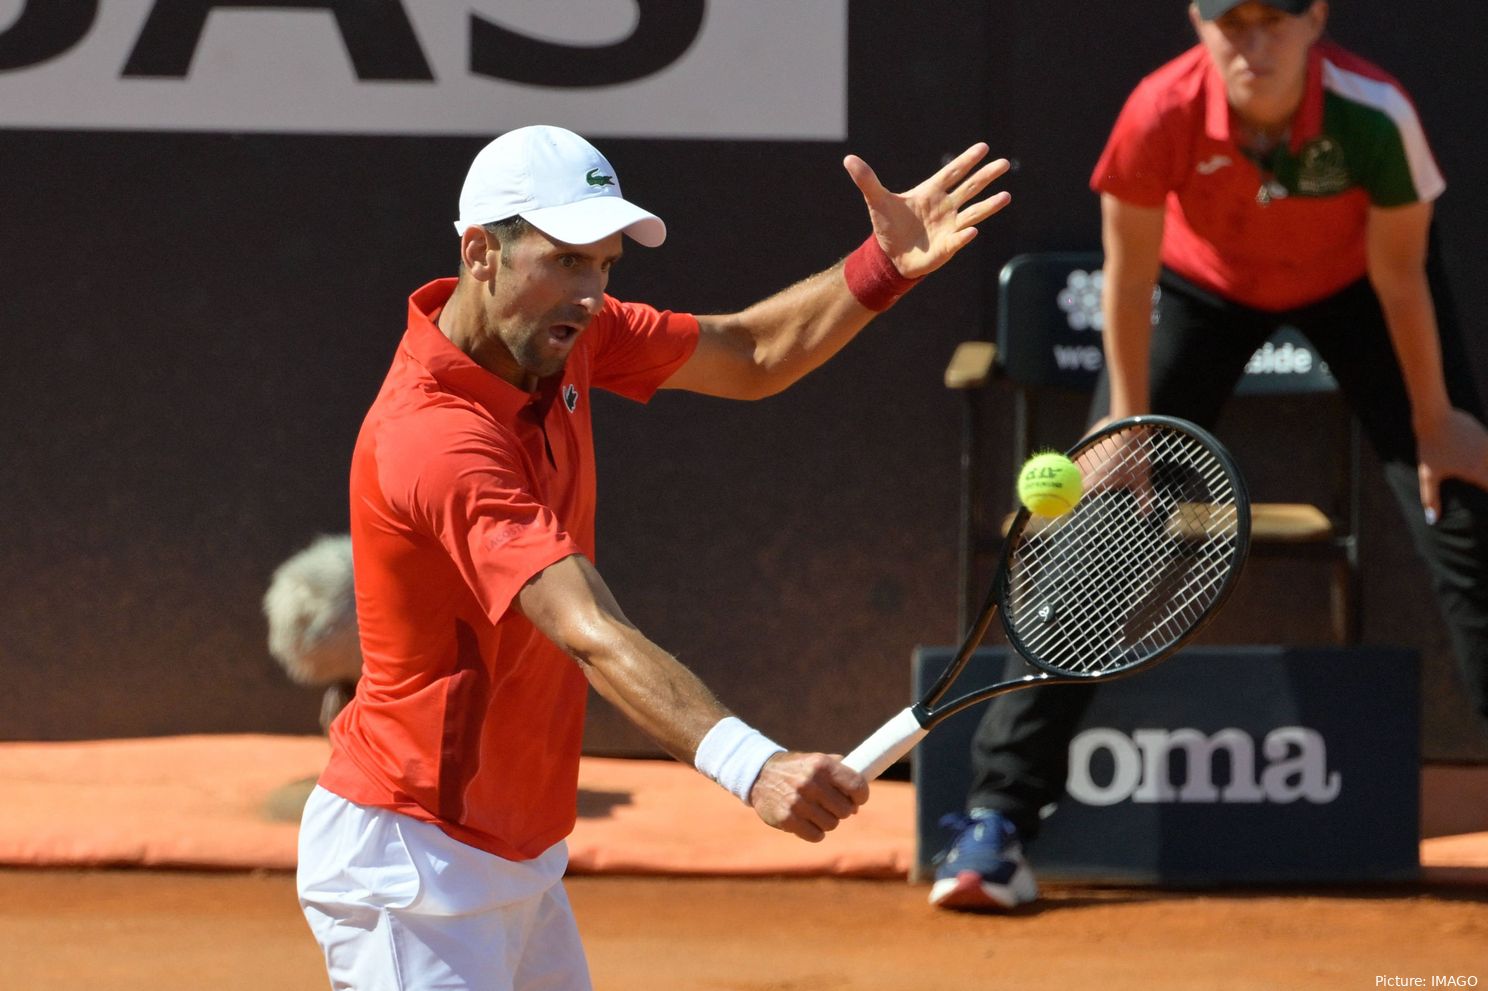 Novak Djokovic ya no está motivado fuera de los torneos de Grand Slam: "Este año tengo una sensación diferente"